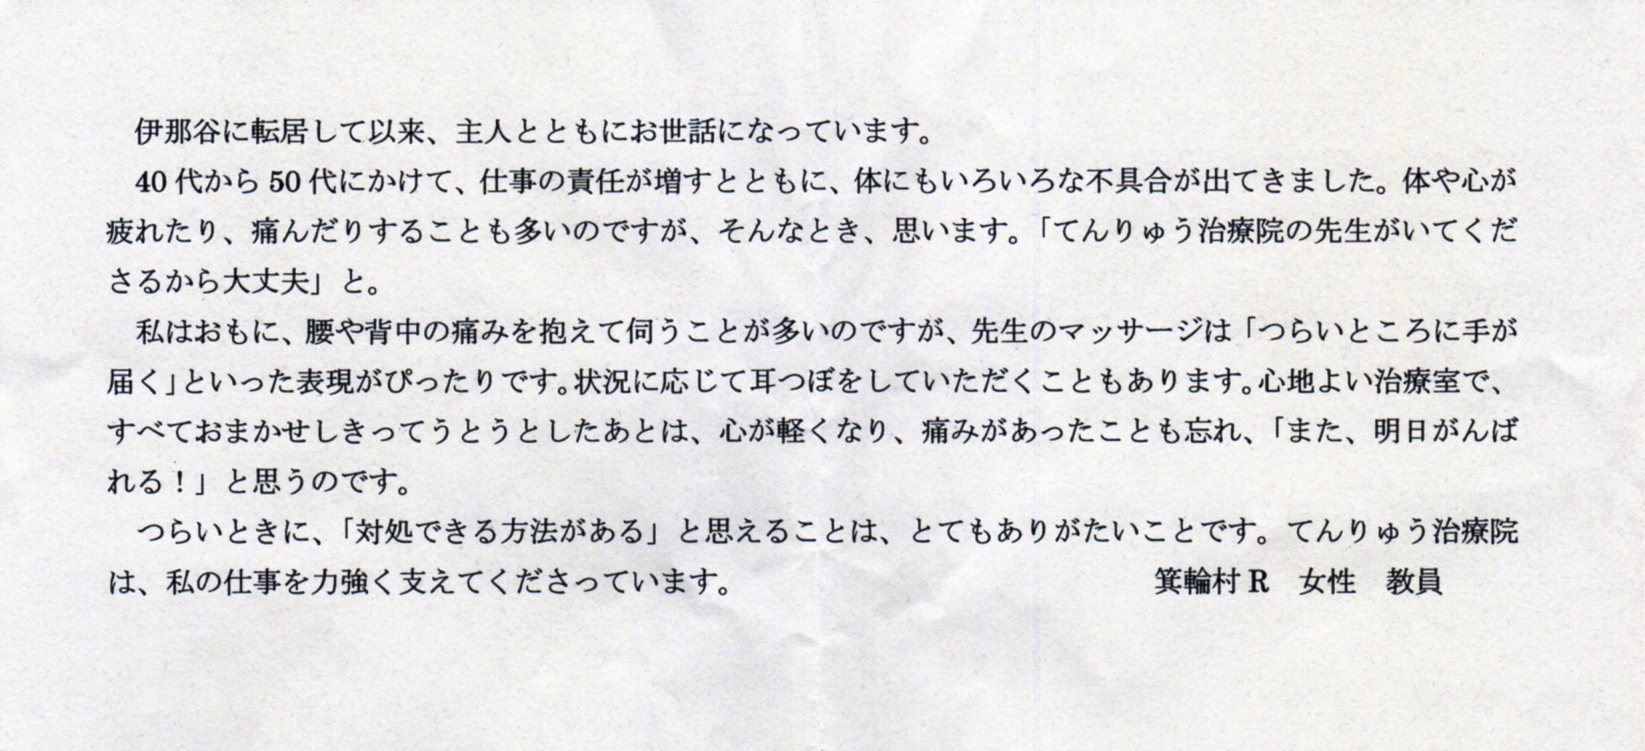 辰野町Kさんからのお手紙